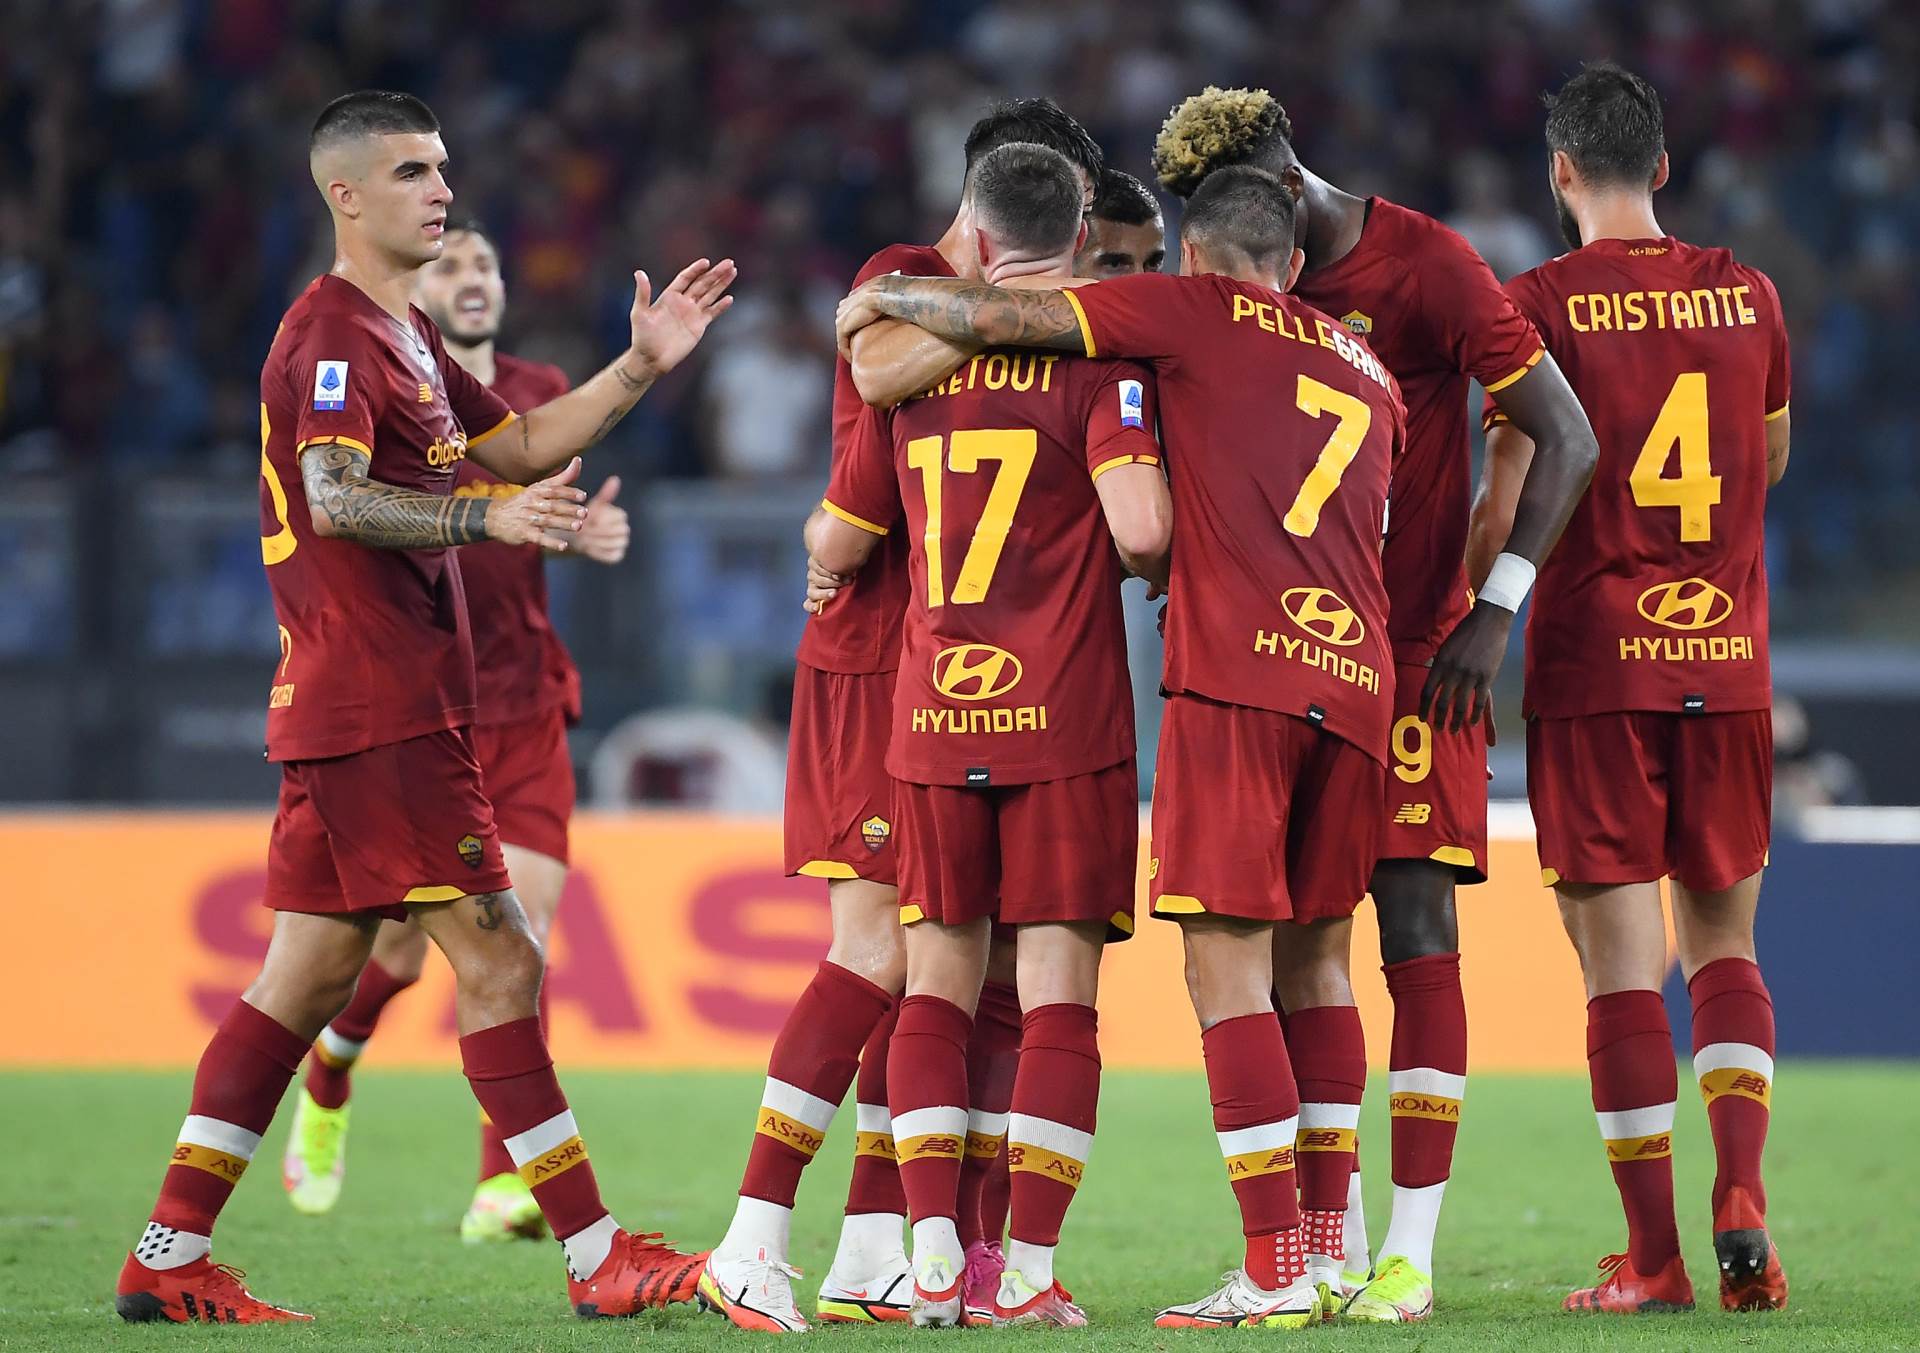  serija a Roma fiorentina 3-1 gol nikola milenković 